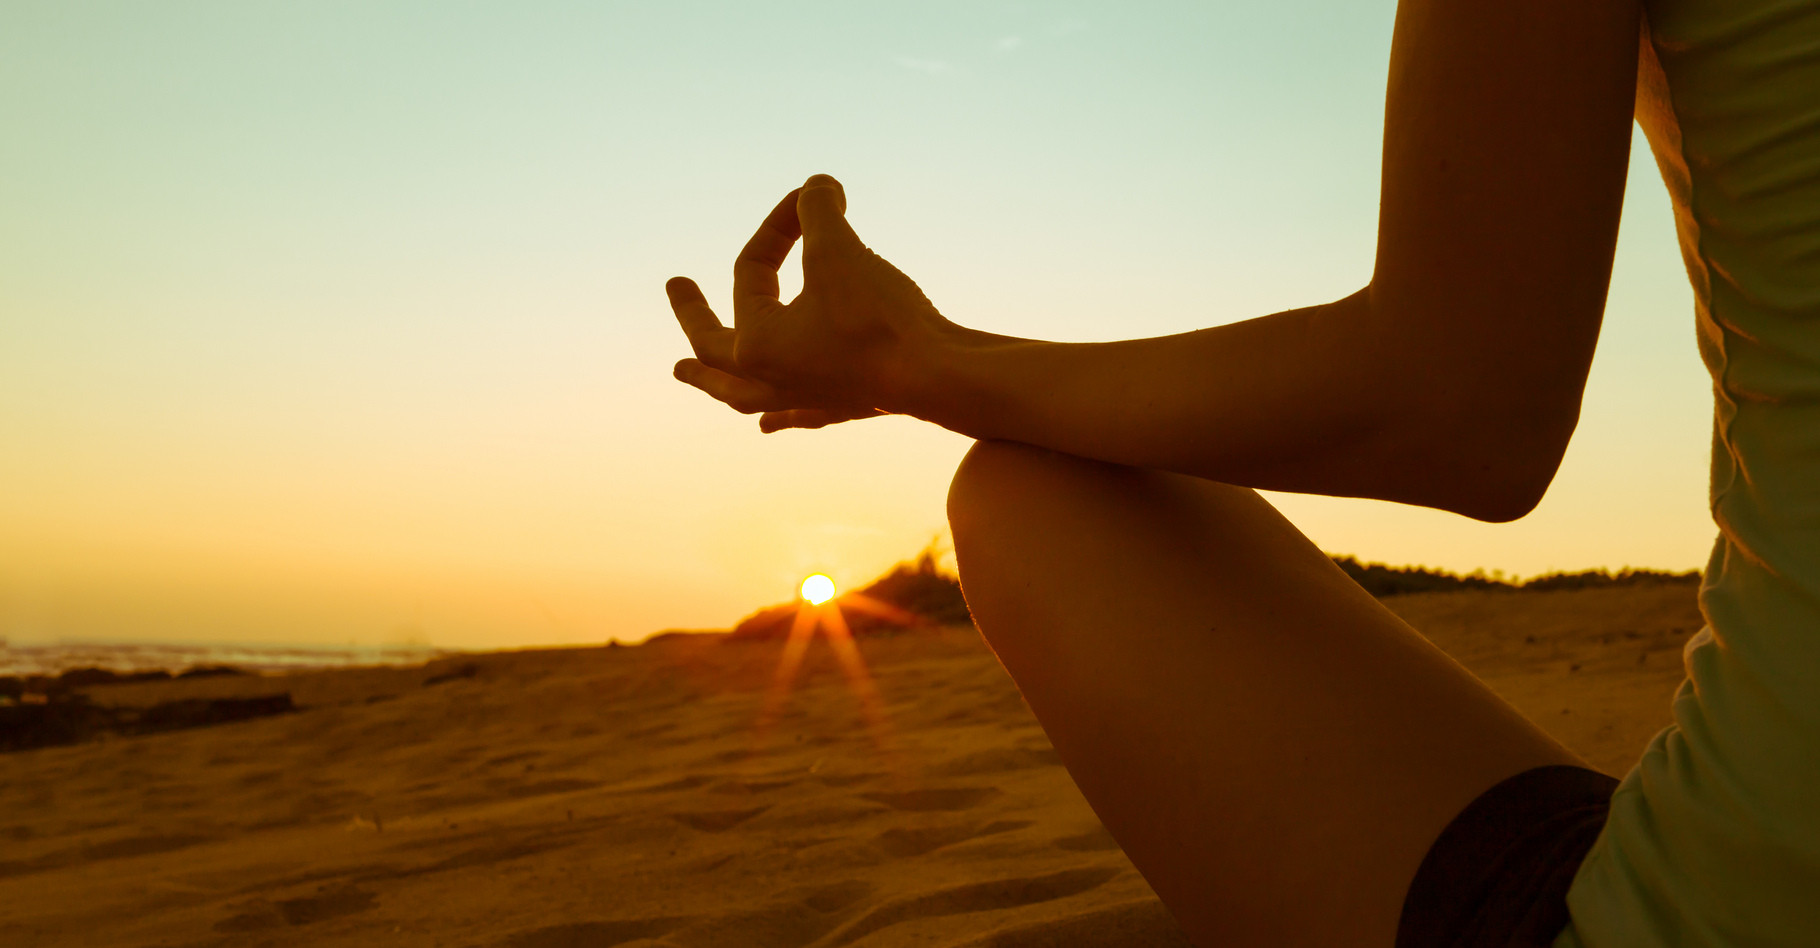 La méditation peut servir à améliorer le bien-être de l’individu. © KieferPix, Shutterstock